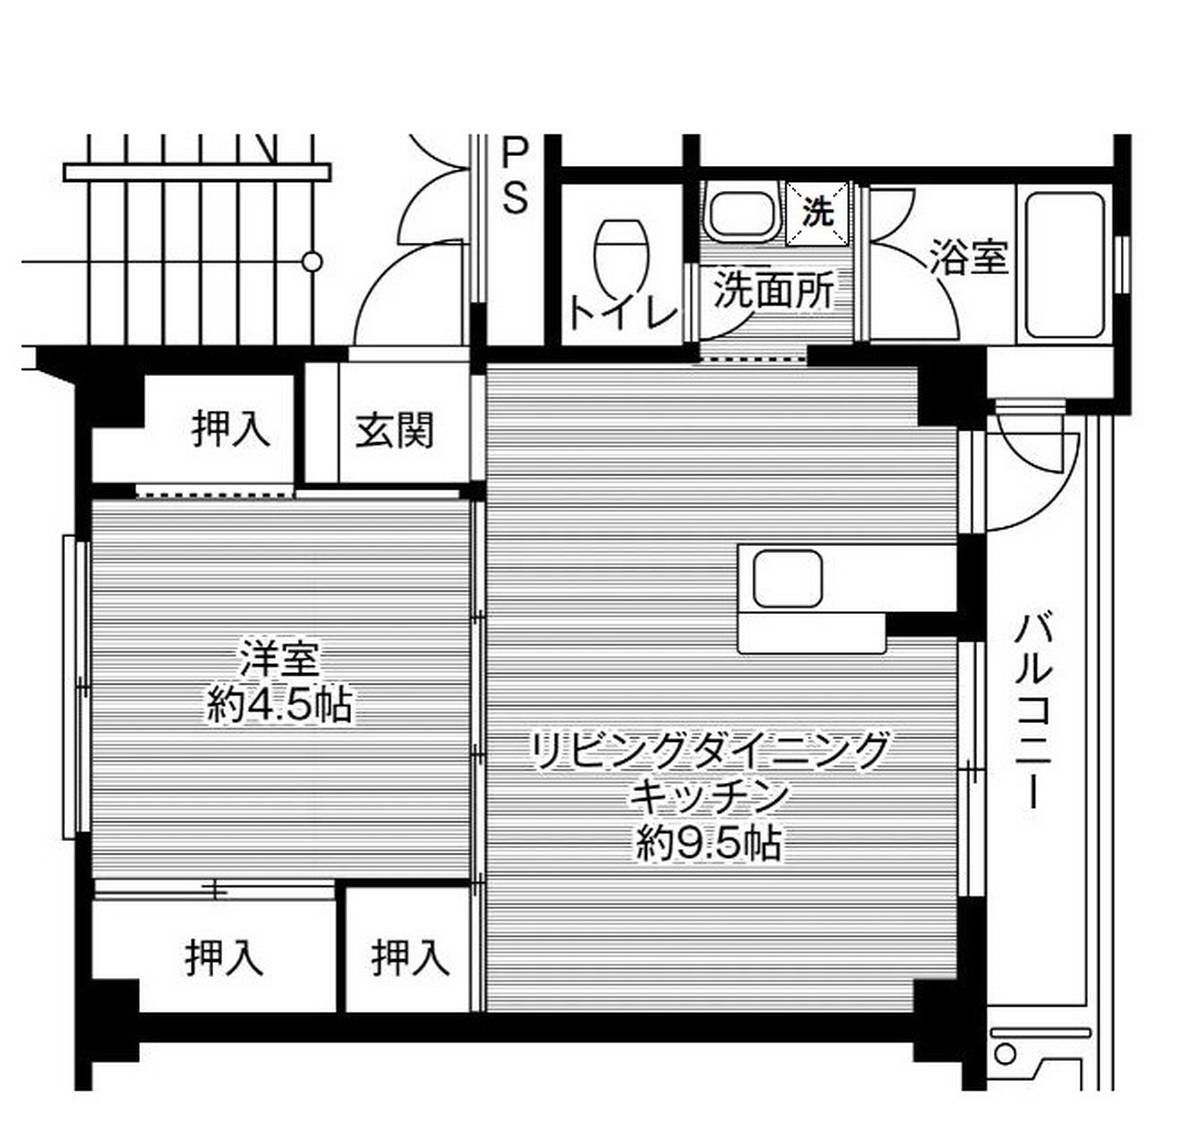 1LDK floorplan of Village House Mantomi in Higashi-ku